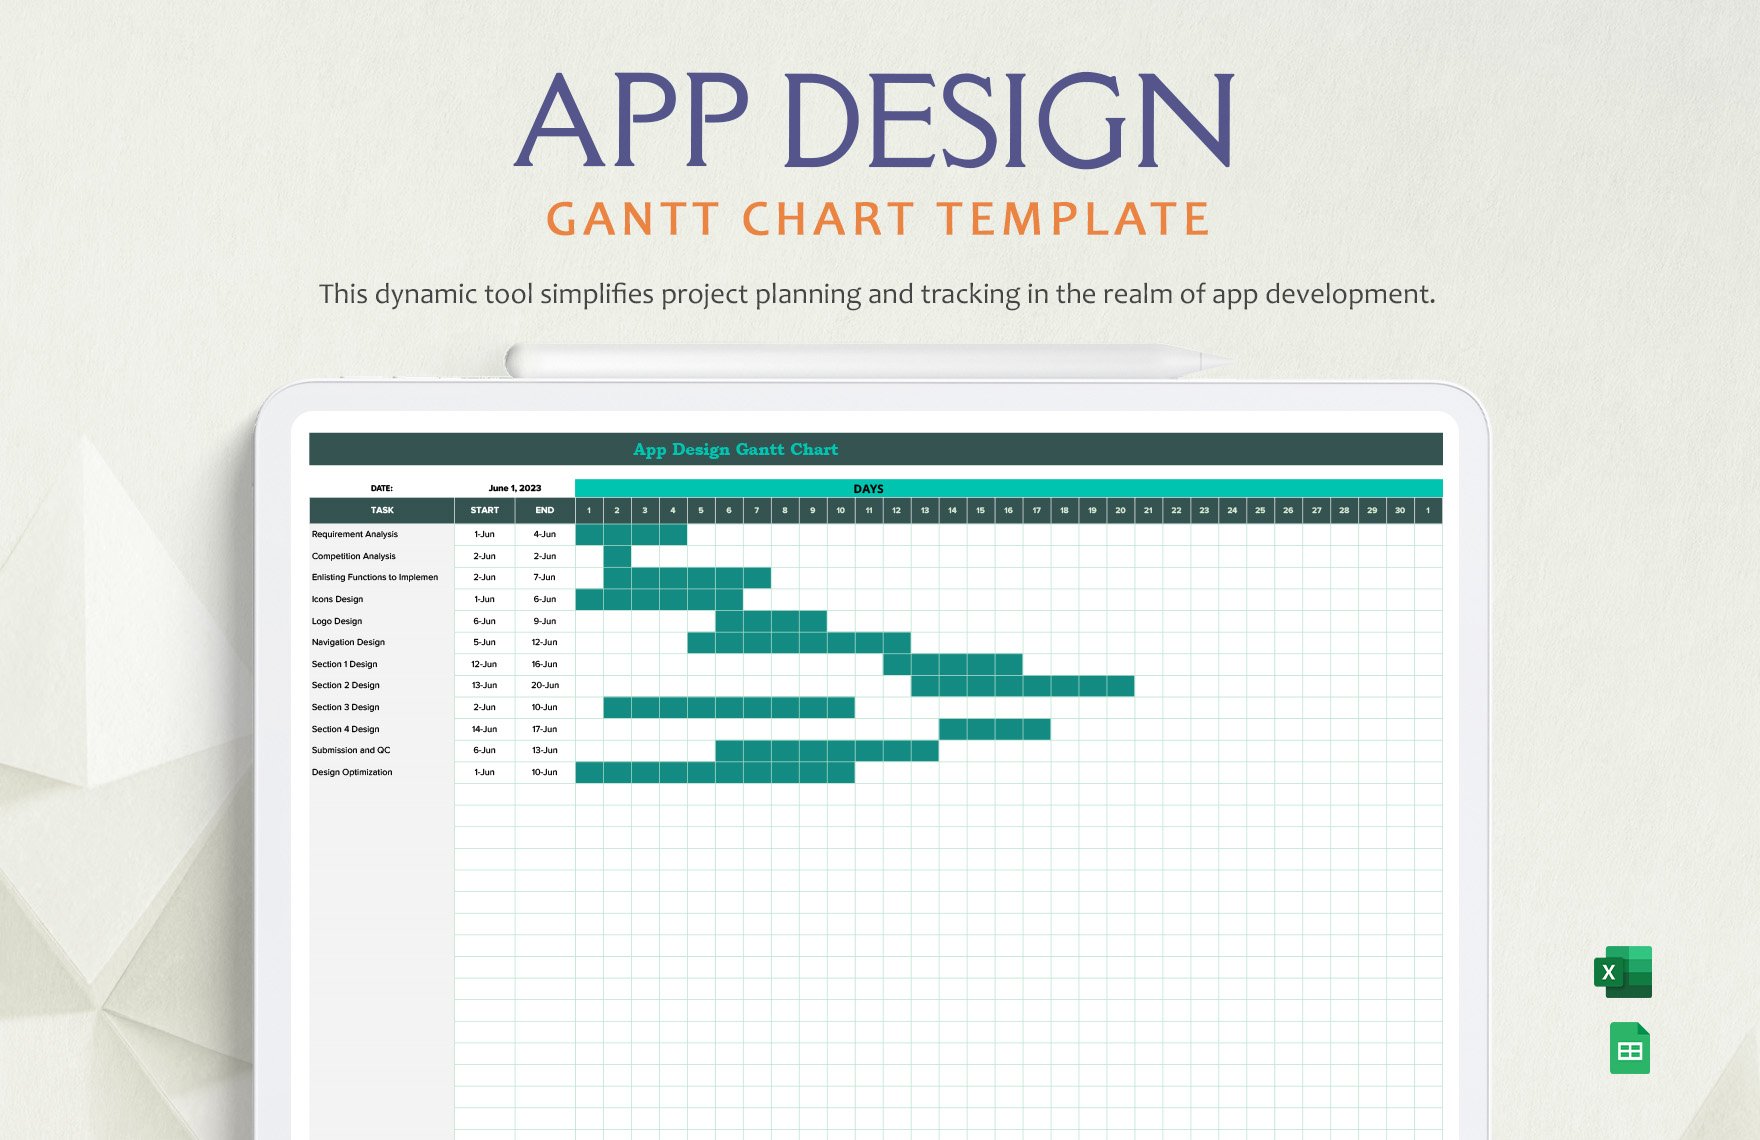 App Design Gantt Chart Template